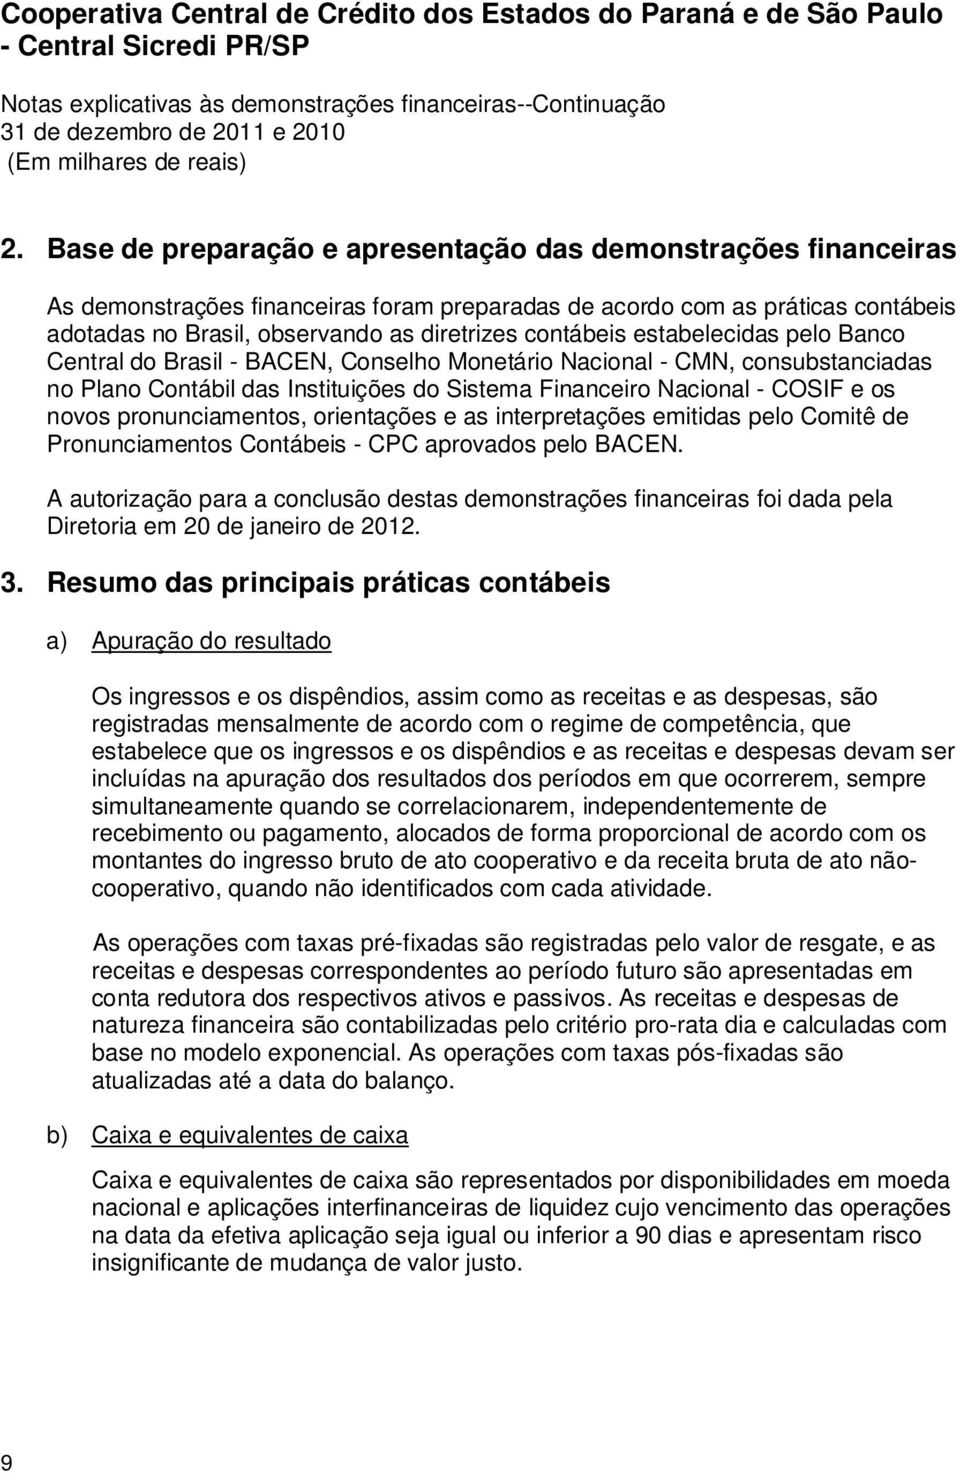 pronunciamentos, orientações e as interpretações emitidas pelo Comitê de Pronunciamentos Contábeis - CPC aprovados pelo BACEN.